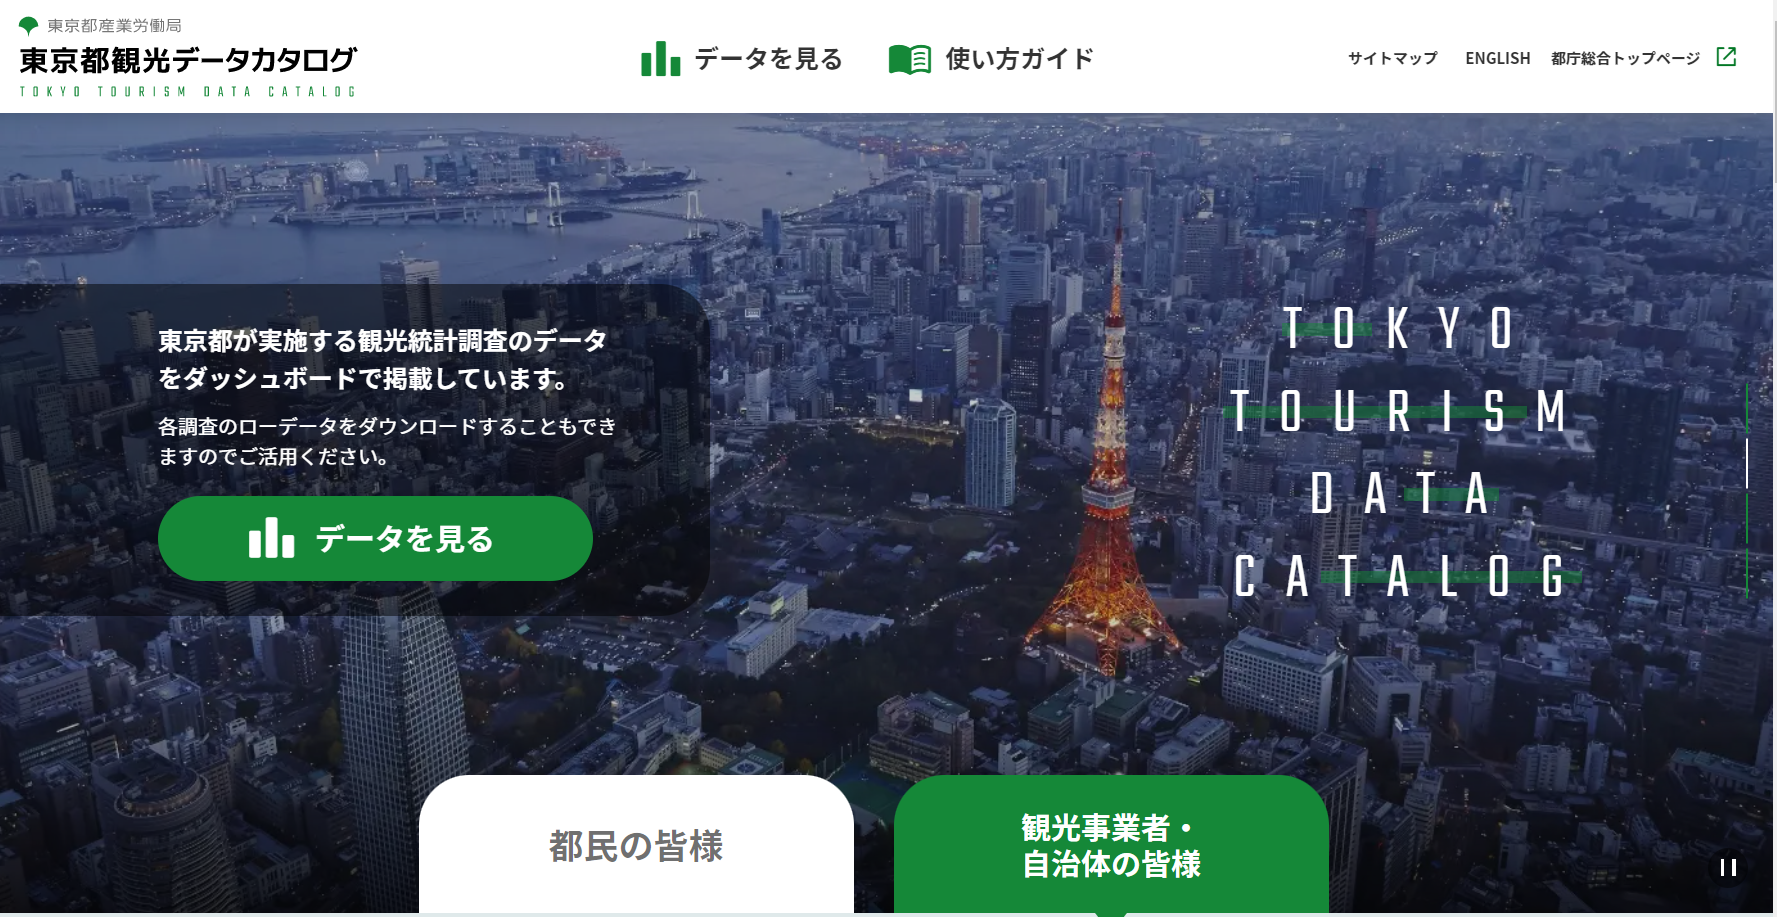 「東京都観光データカタログ」トップ画面